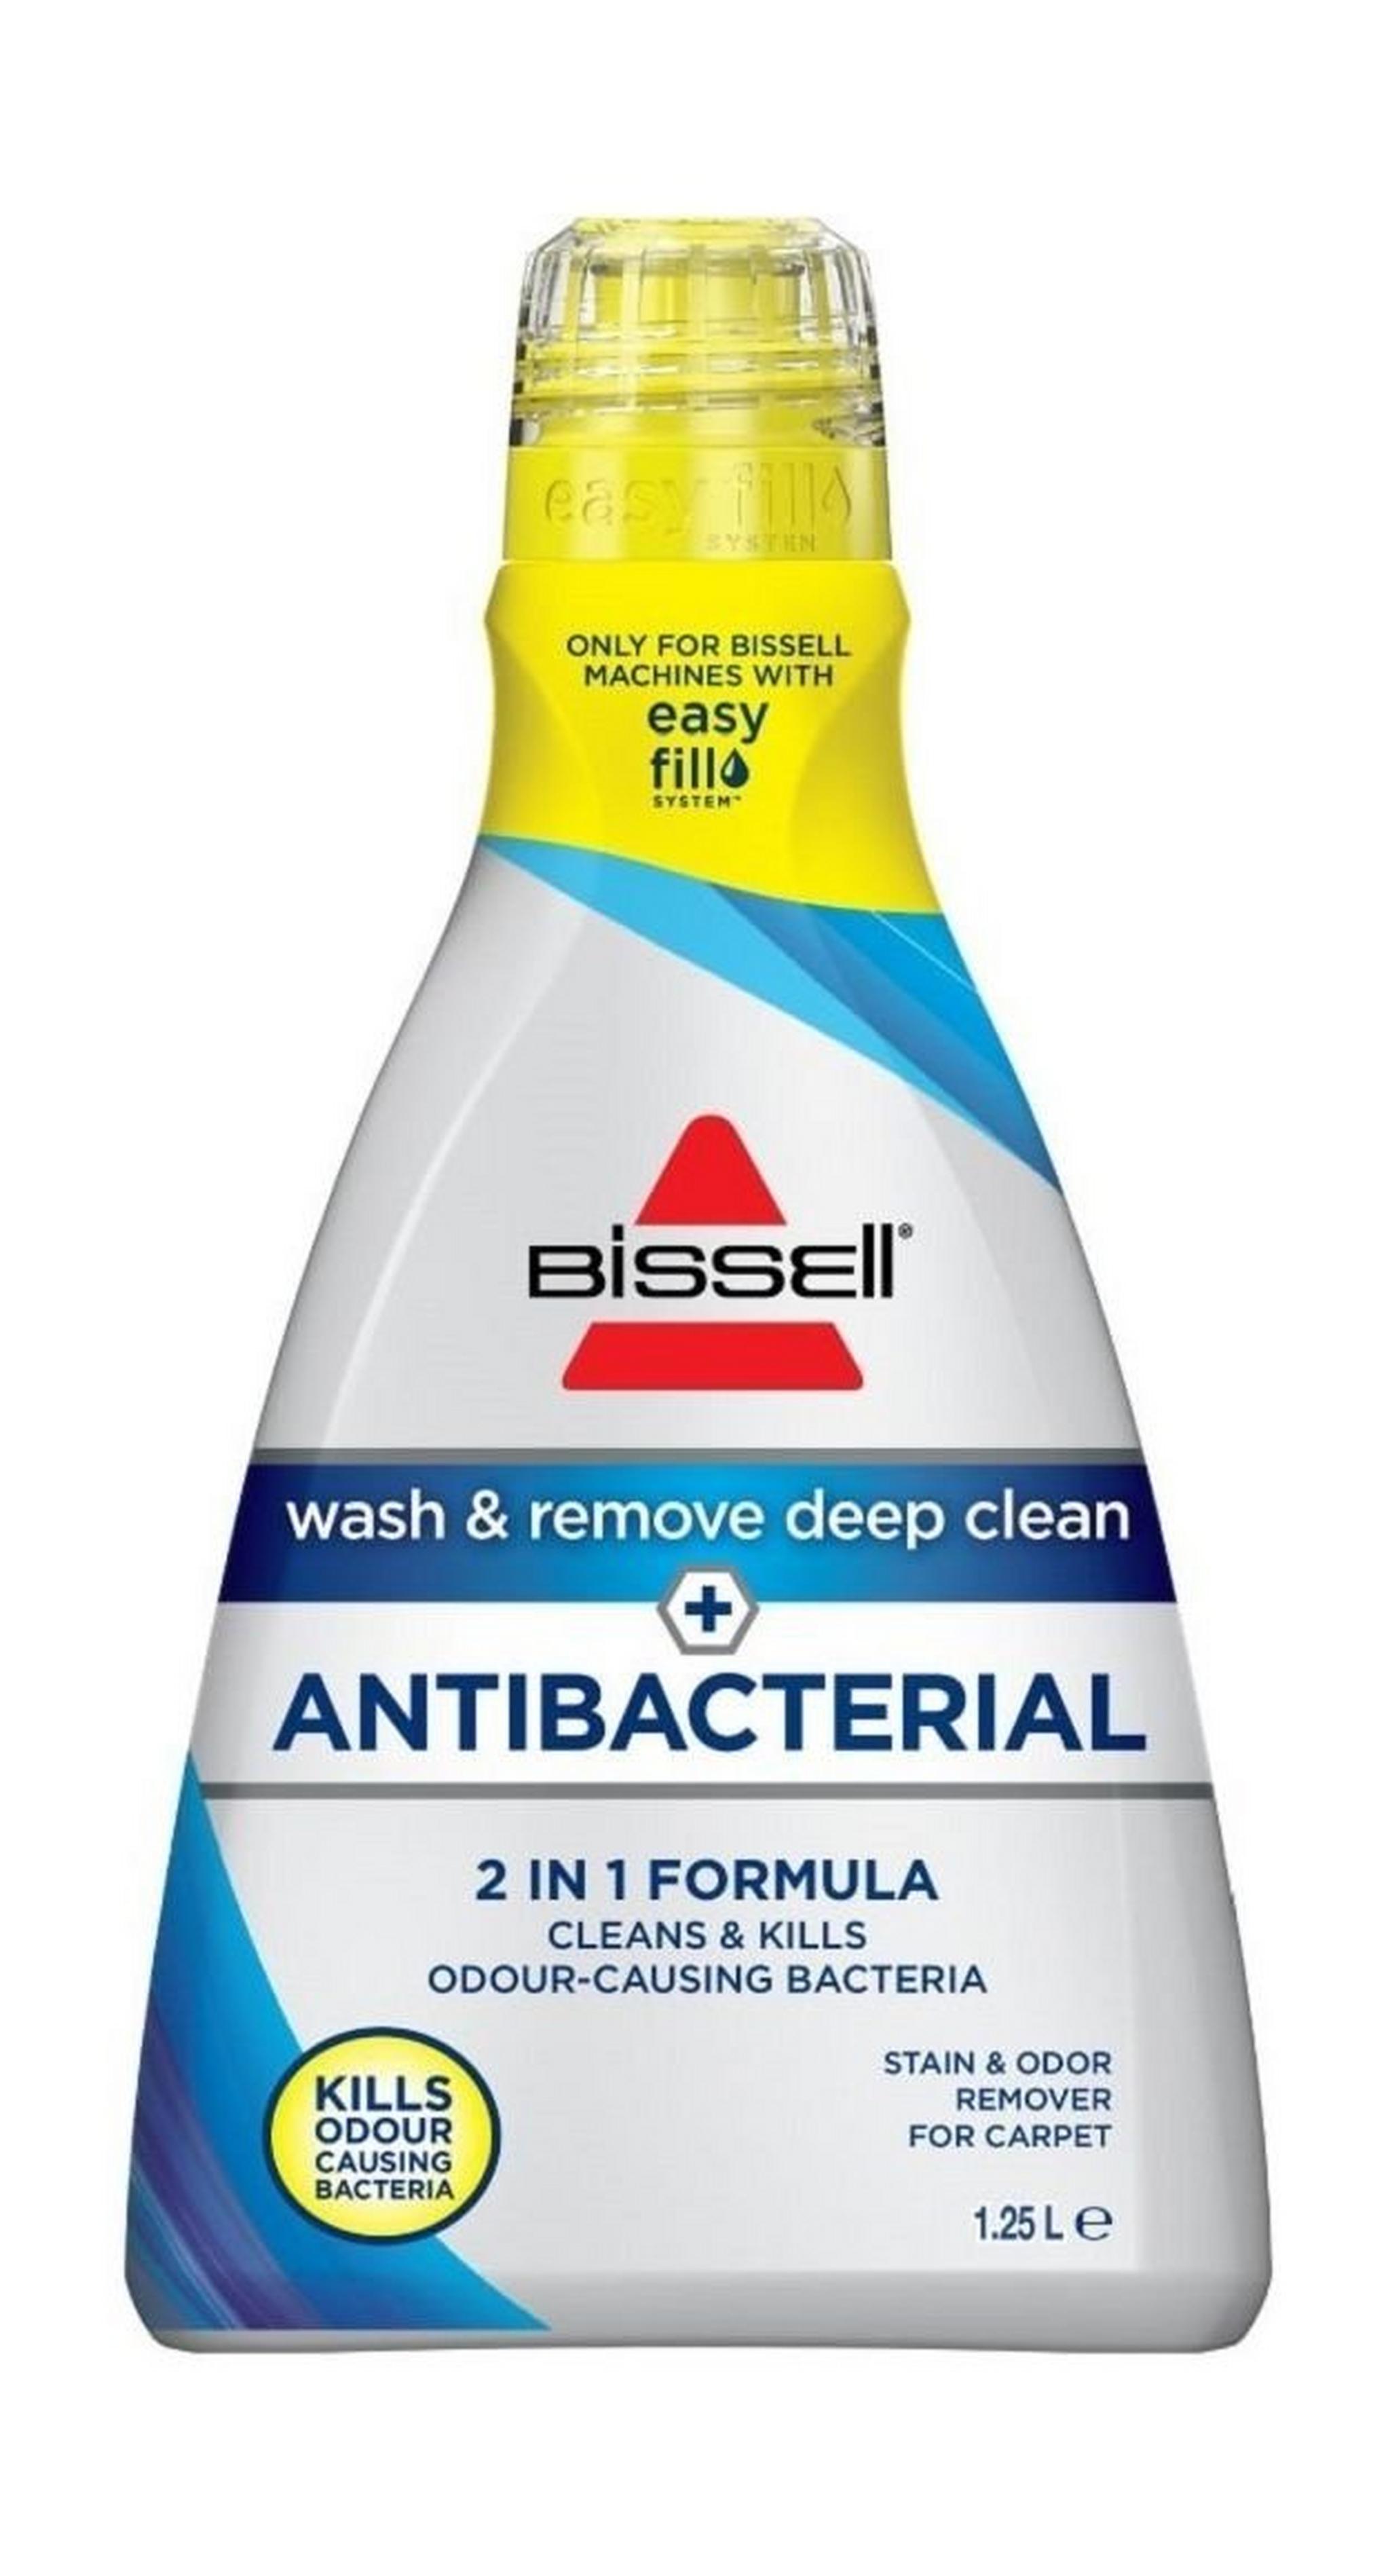 تركيبة التنظيف والإزالة العميبقة المضادة للبكتيريا ١٨٩٨ إي من بيسيل - ١,٢٥ لتر